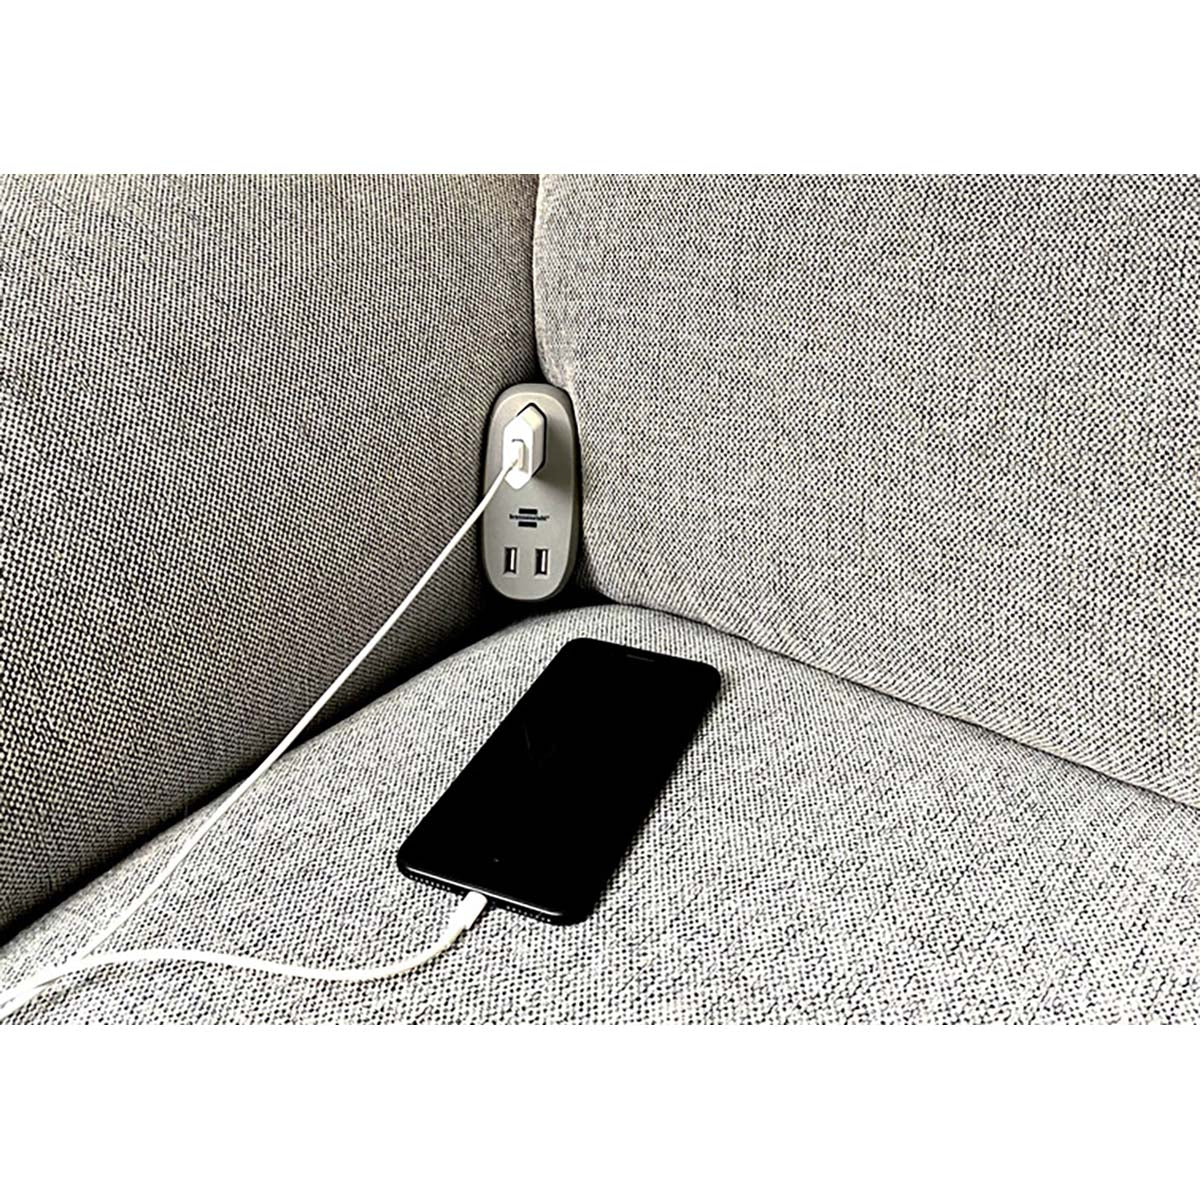 Estilo Sofa-Steckdose mit USB-Ladefunktion (Couch-Steckdose mit 1x Euro-Steckdose und 2x USB-Charger, Bett-Steckdose mit Halteschiene) EURO